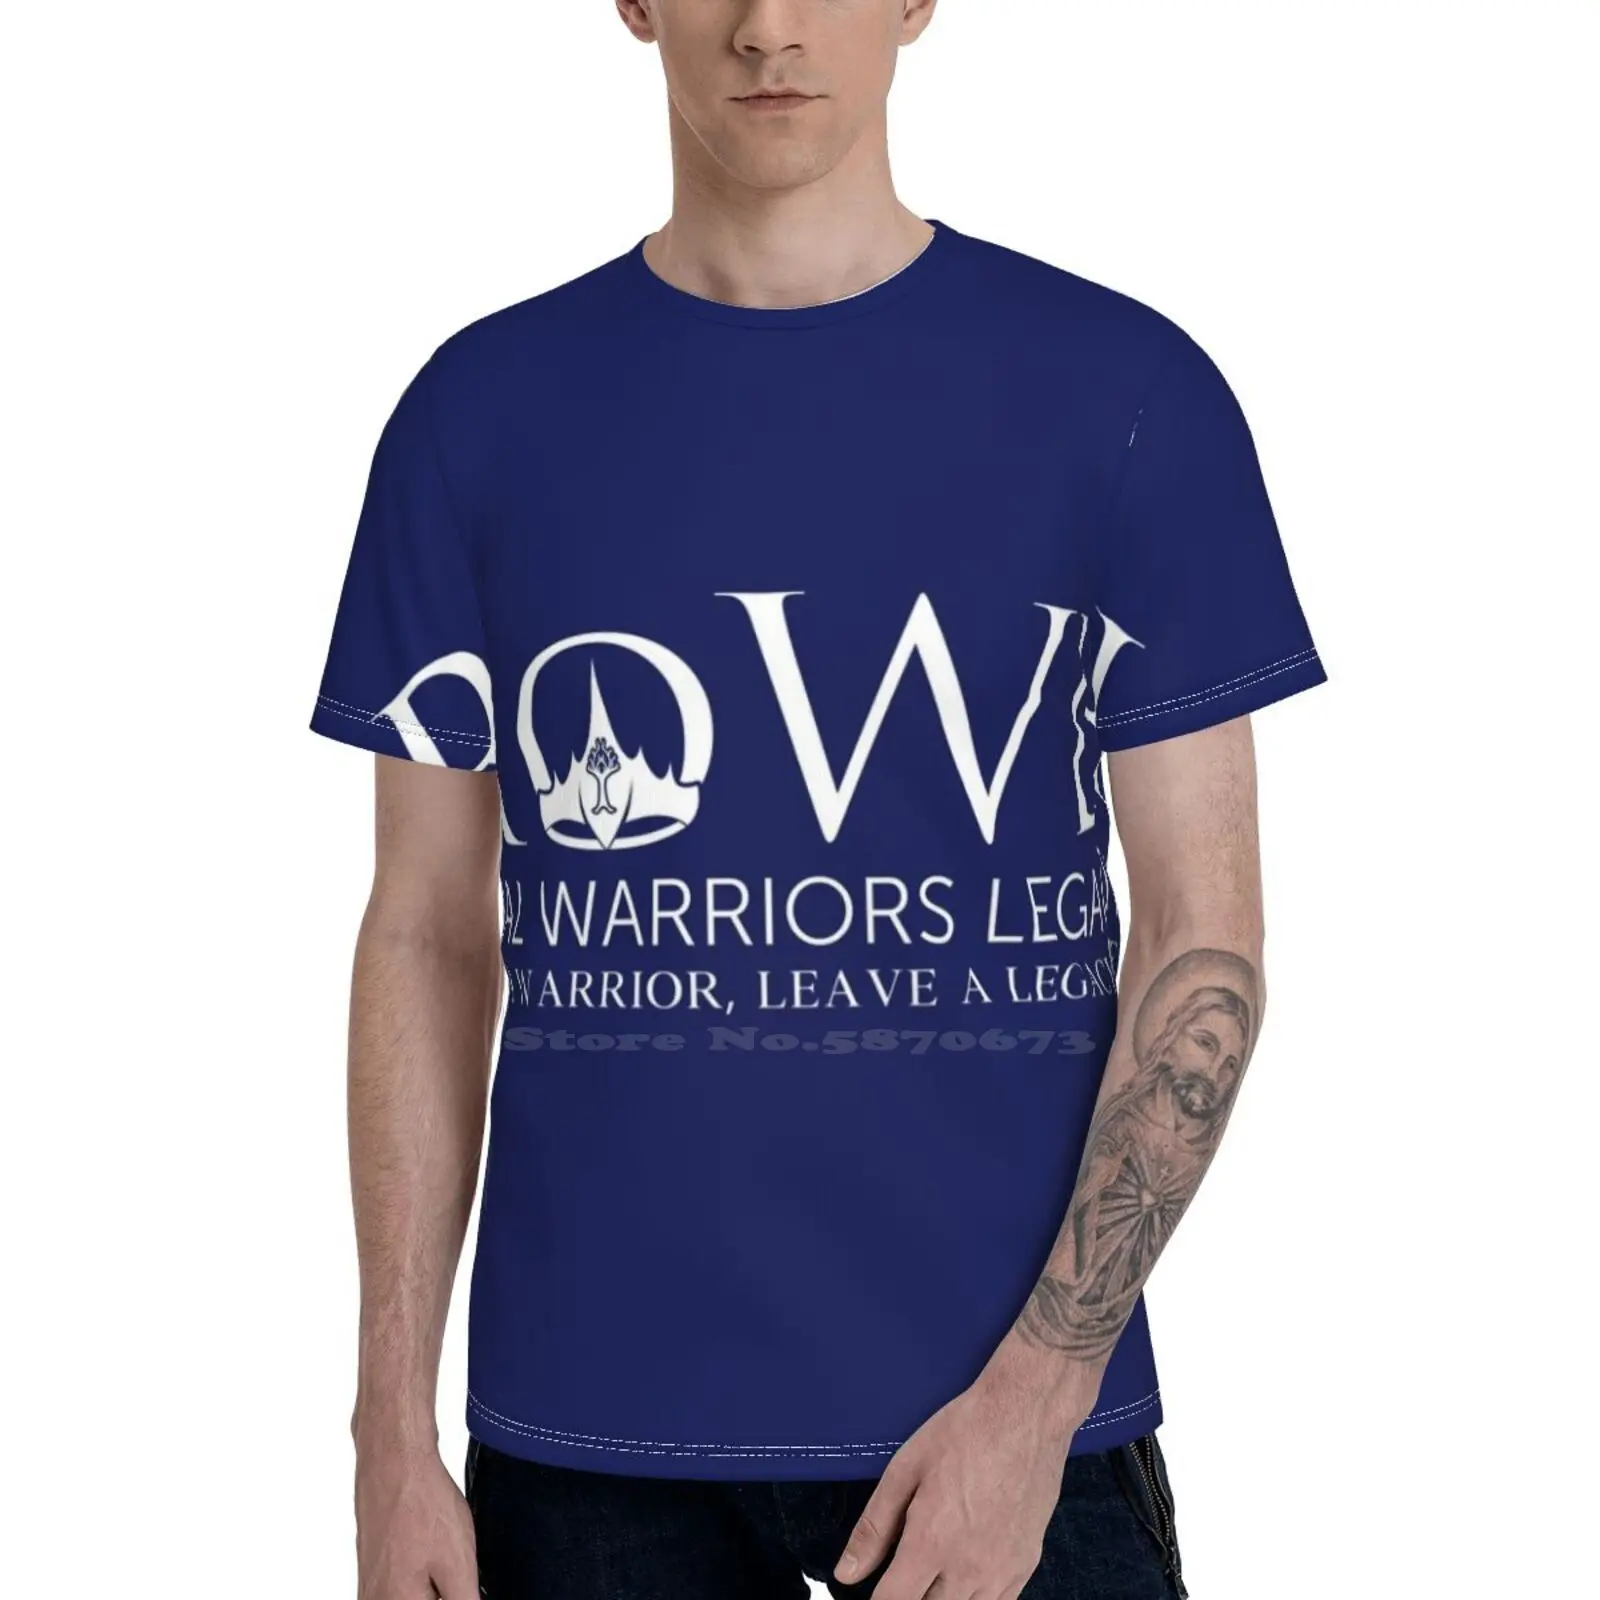 

Футболка Rowl монохромная (темно-синяя), крутая уличная дышащая футболка с 3D рисунком Иисуса, христианский дизайн, Королевская корона, Роул, ко...